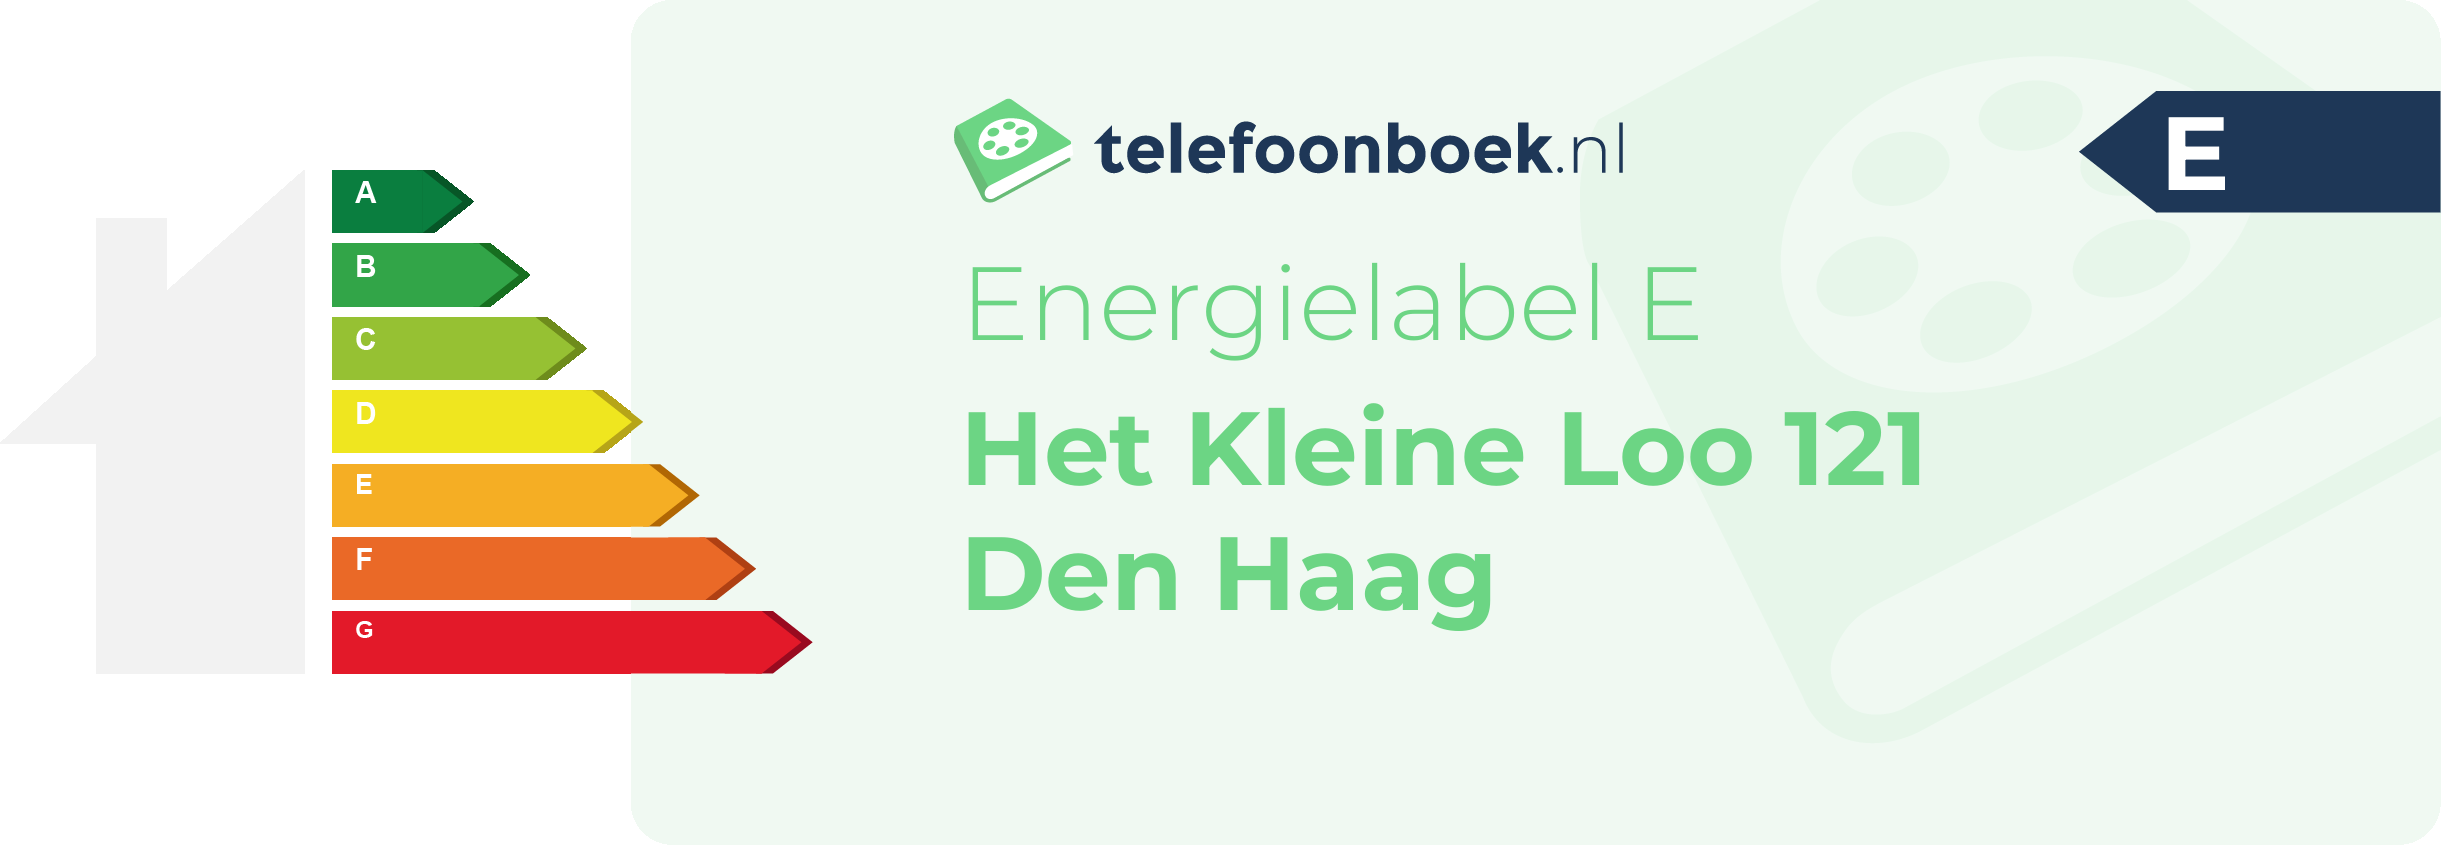 Energielabel Het Kleine Loo 121 Den Haag